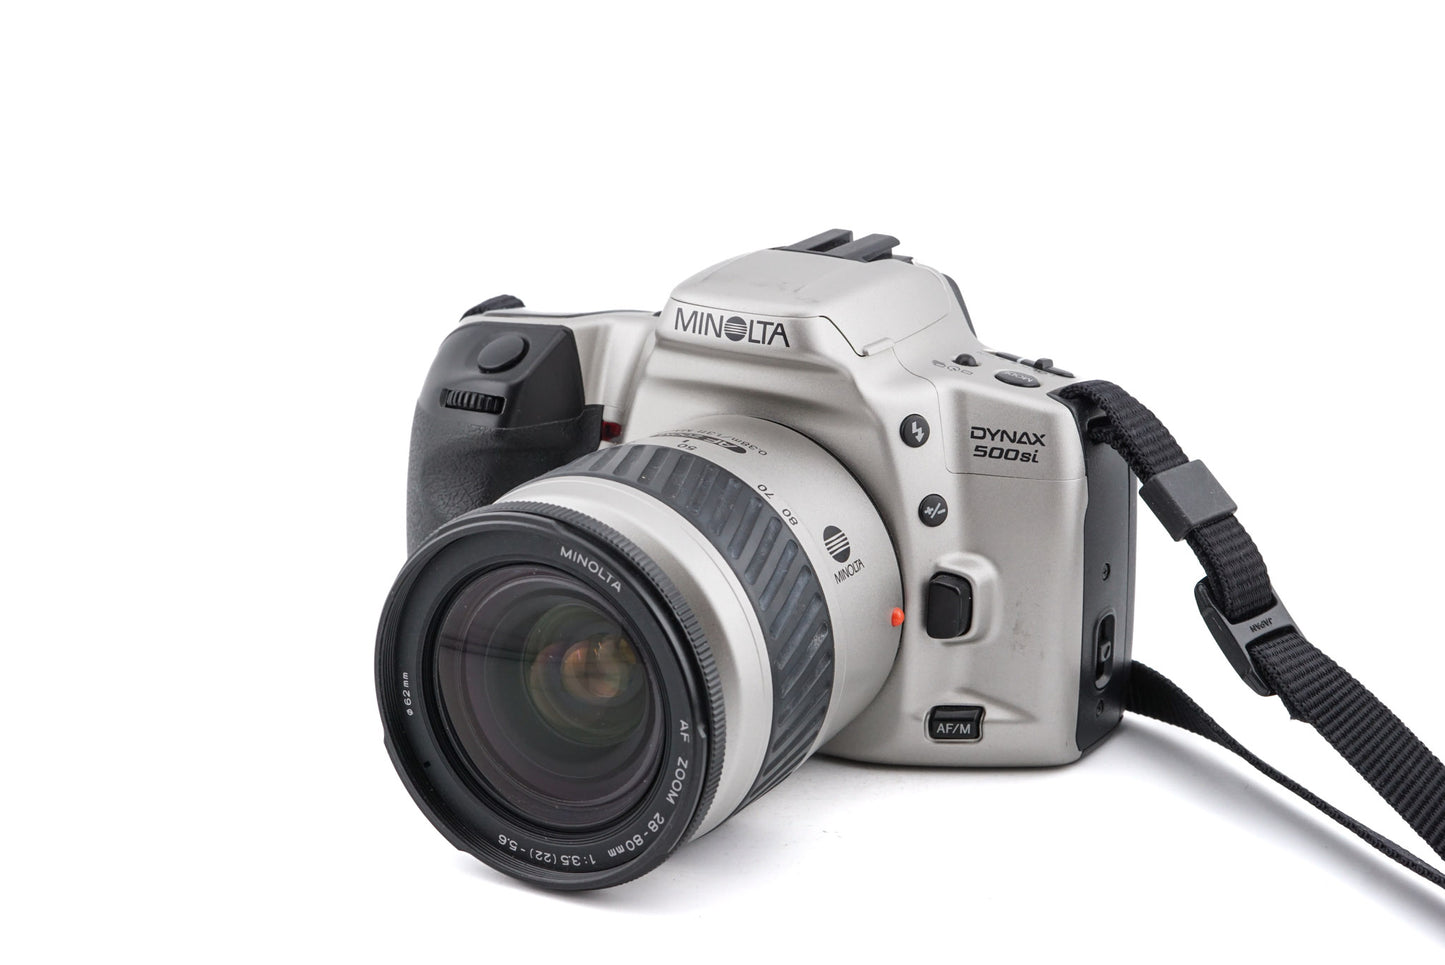 Minolta Dynax 500si + 28-80mm f3.5-5.6 AF Zoom Macro